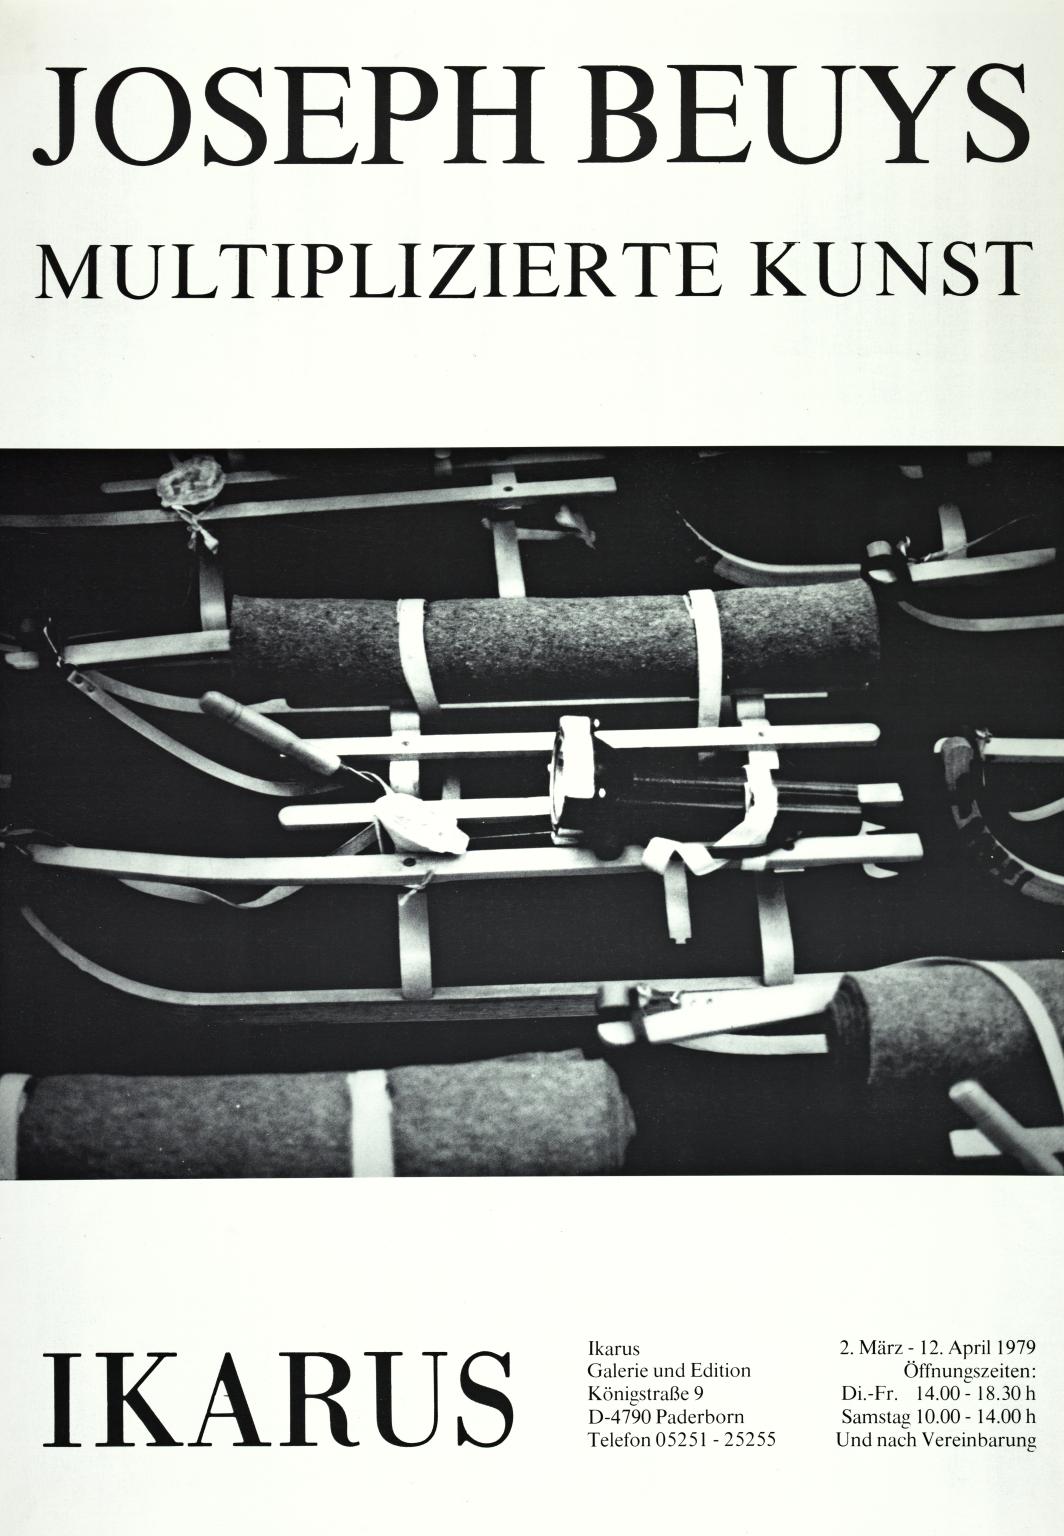 Joseph Beuys: Multiplizierte Kunst Ikarus Galerie und Edition. 1979